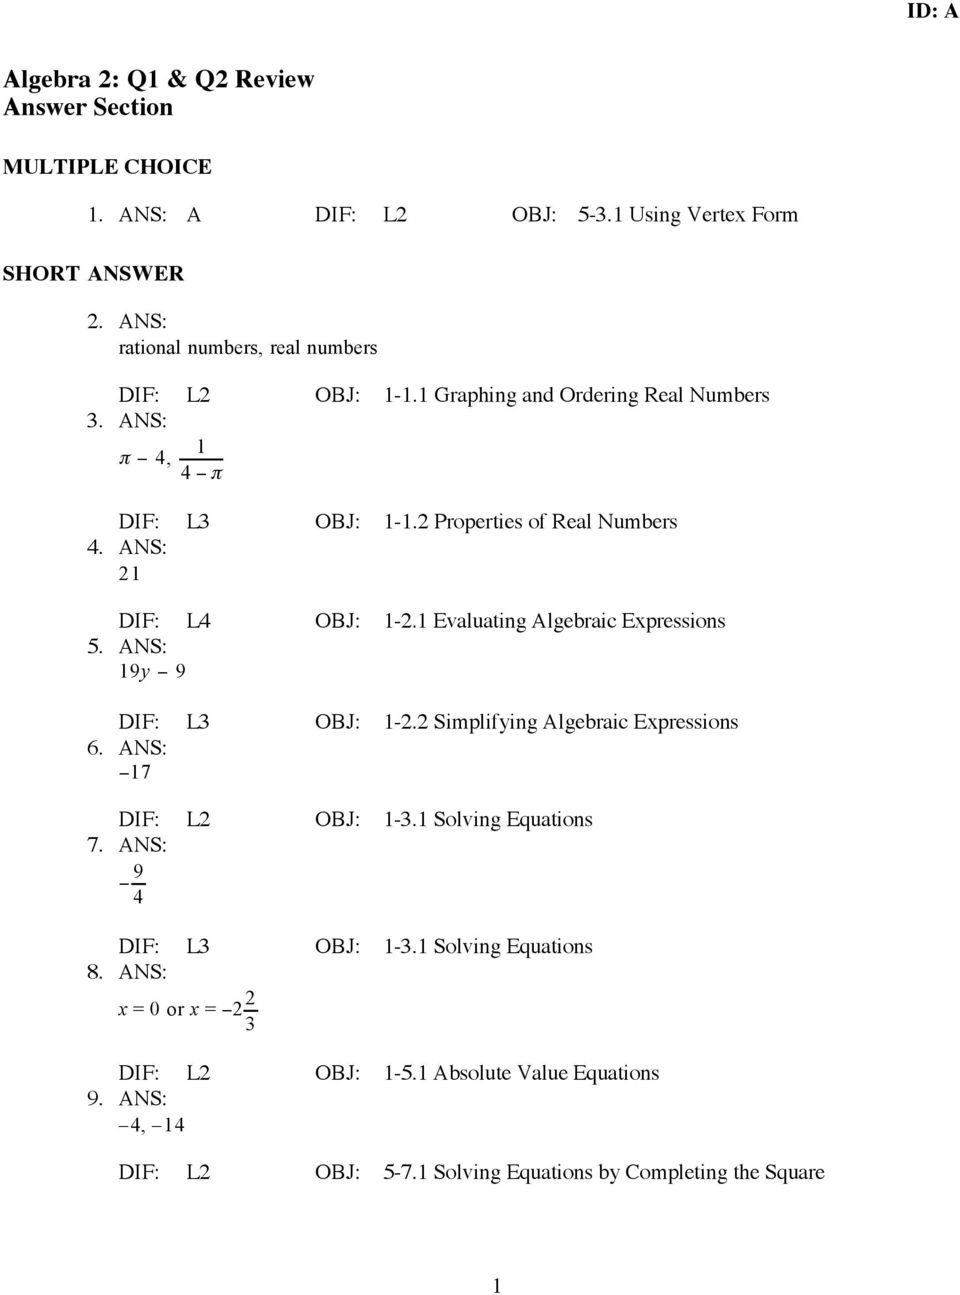 ANS: 21 DIF: L4 OBJ: 1-2.1 Evaluating Algebraic Expressions 5. ANS: 19y 9 DIF: L3 OBJ: 1-2.2 Simplifying Algebraic Expressions 6. ANS: 17 DIF: L2 OBJ: 1-3.